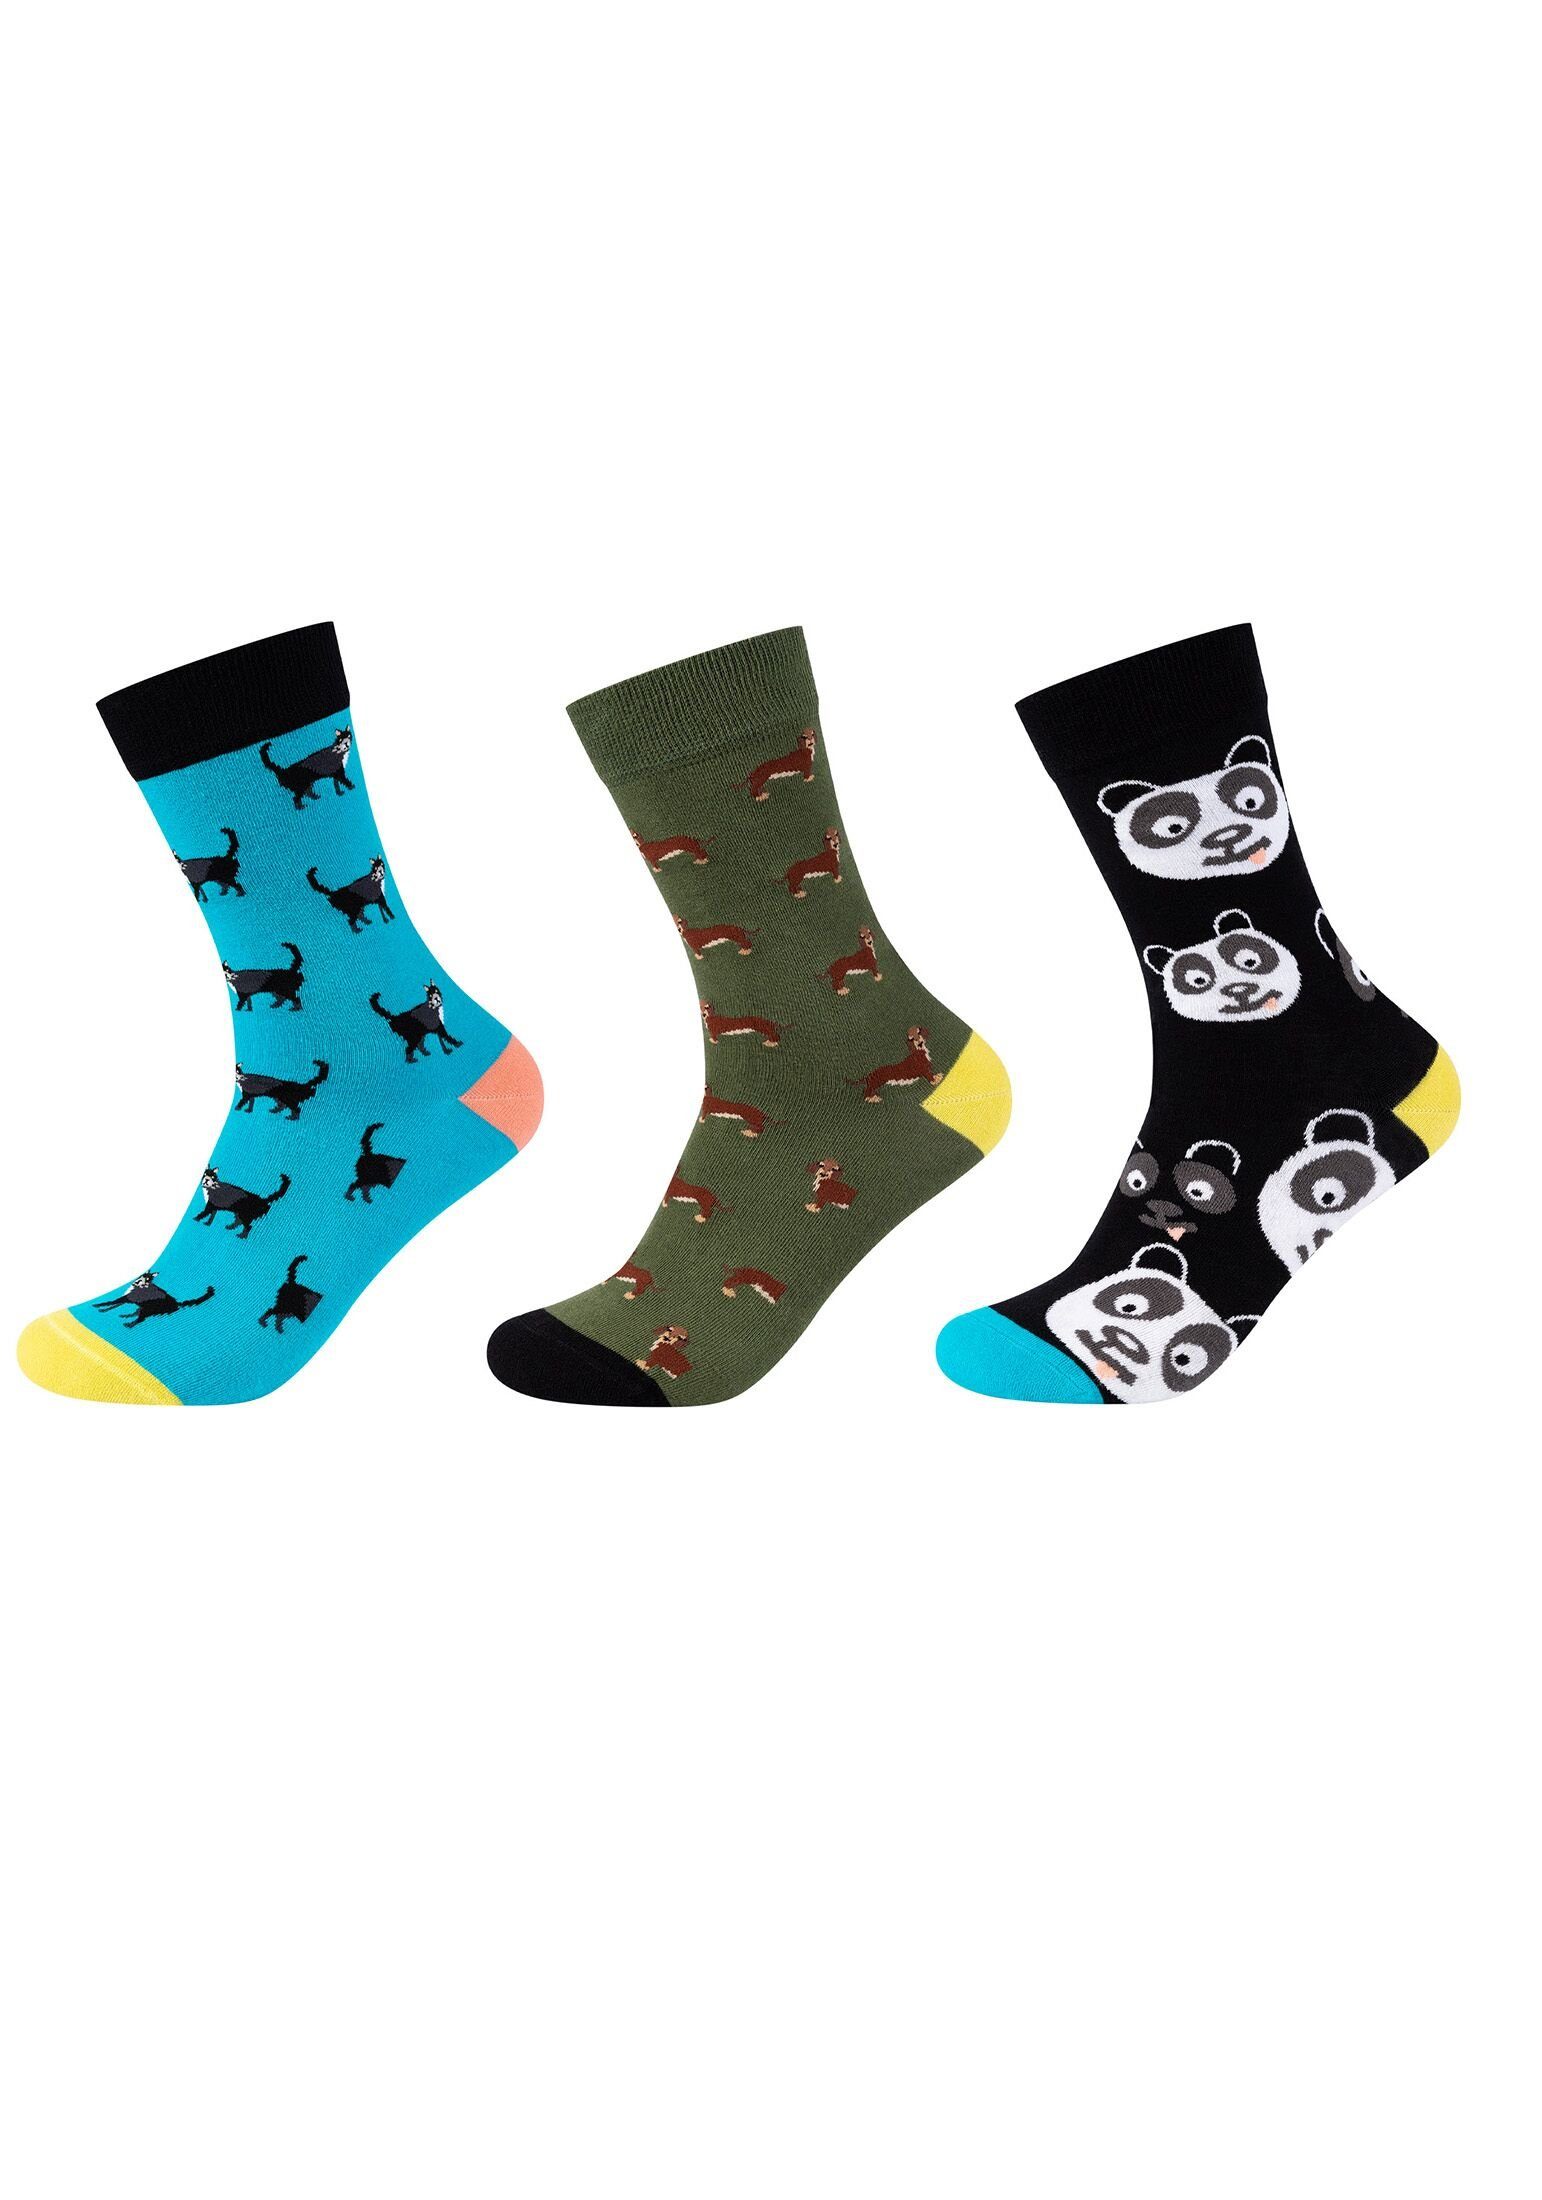 Fun Socks Socken Socken 3er Pack